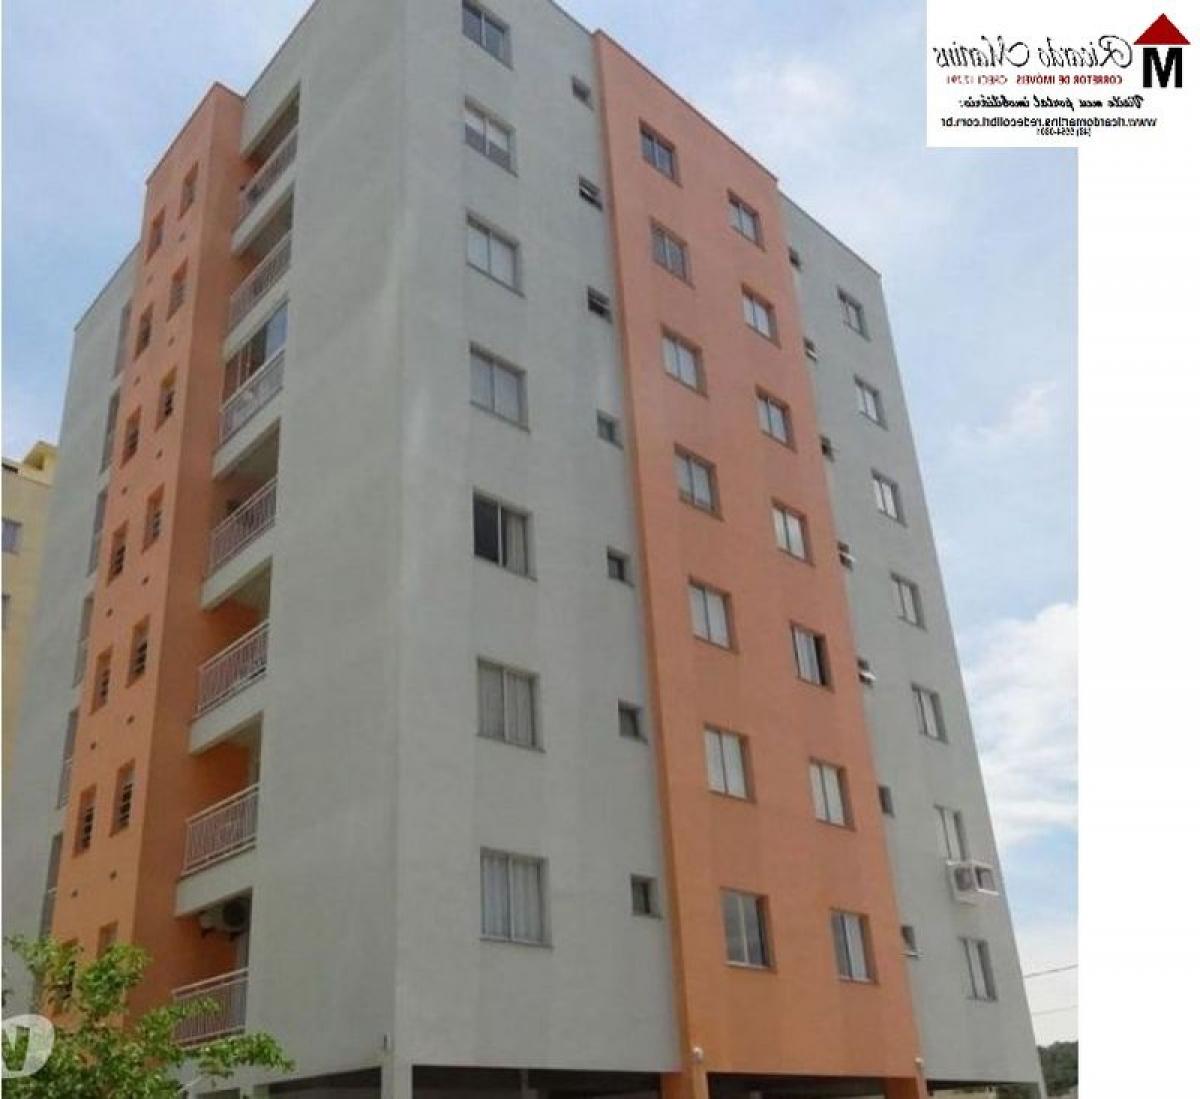 Picture of Apartment For Sale in Roraima, Roraima, Brazil